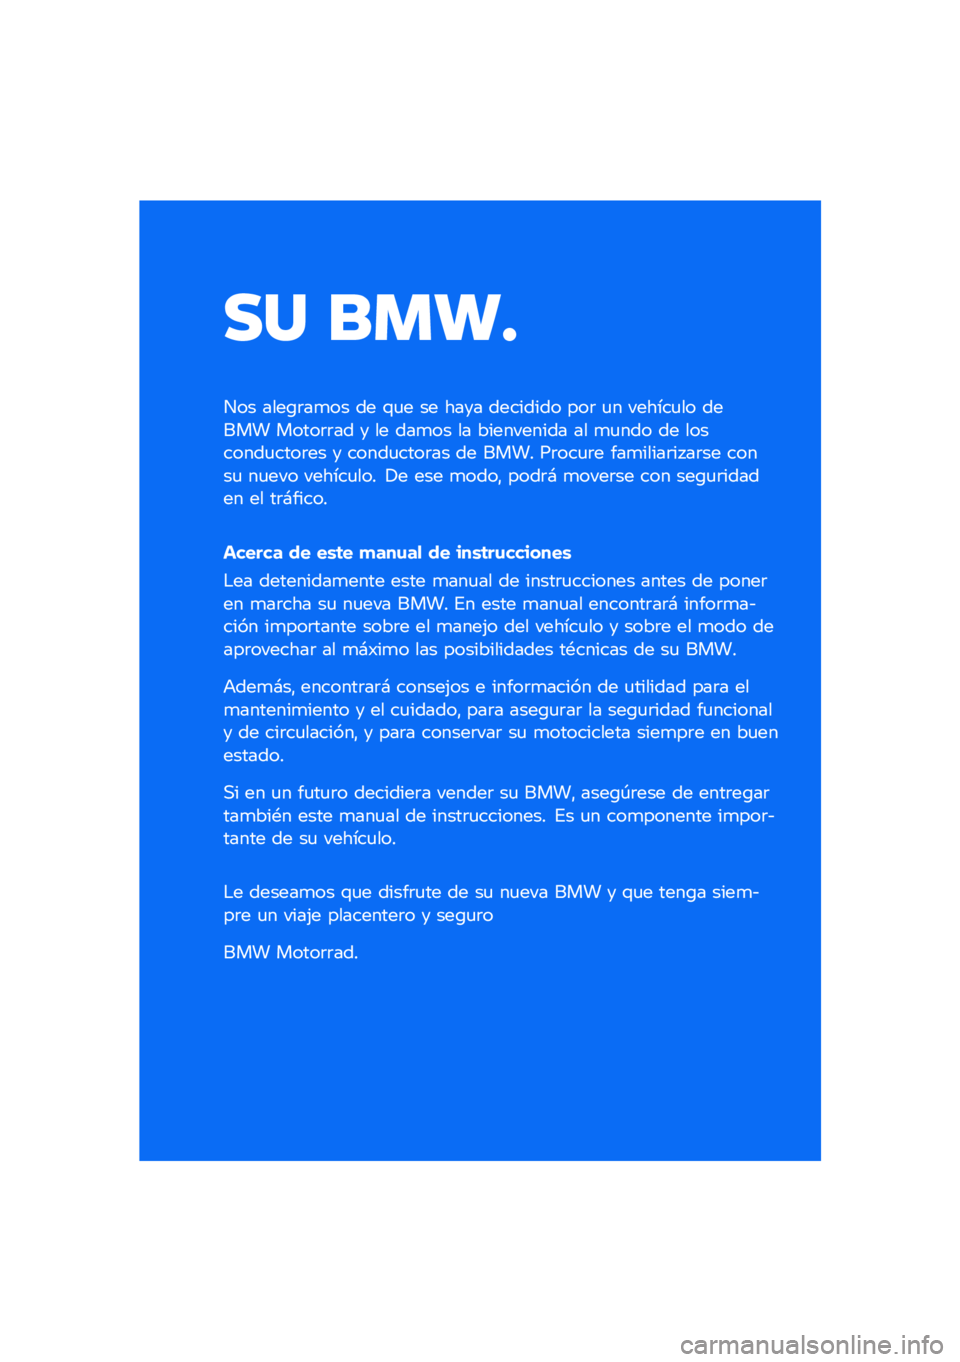 BMW MOTORRAD CE 04 2021  Manual de instrucciones (in Spanish) �� ����
��� ����\b�	��
�� �� �\f�
� �� ���� �������� ���	 �
� ������
�� ����� �����	�	�� � �� ���
�� �� ���������� �� �
�
��